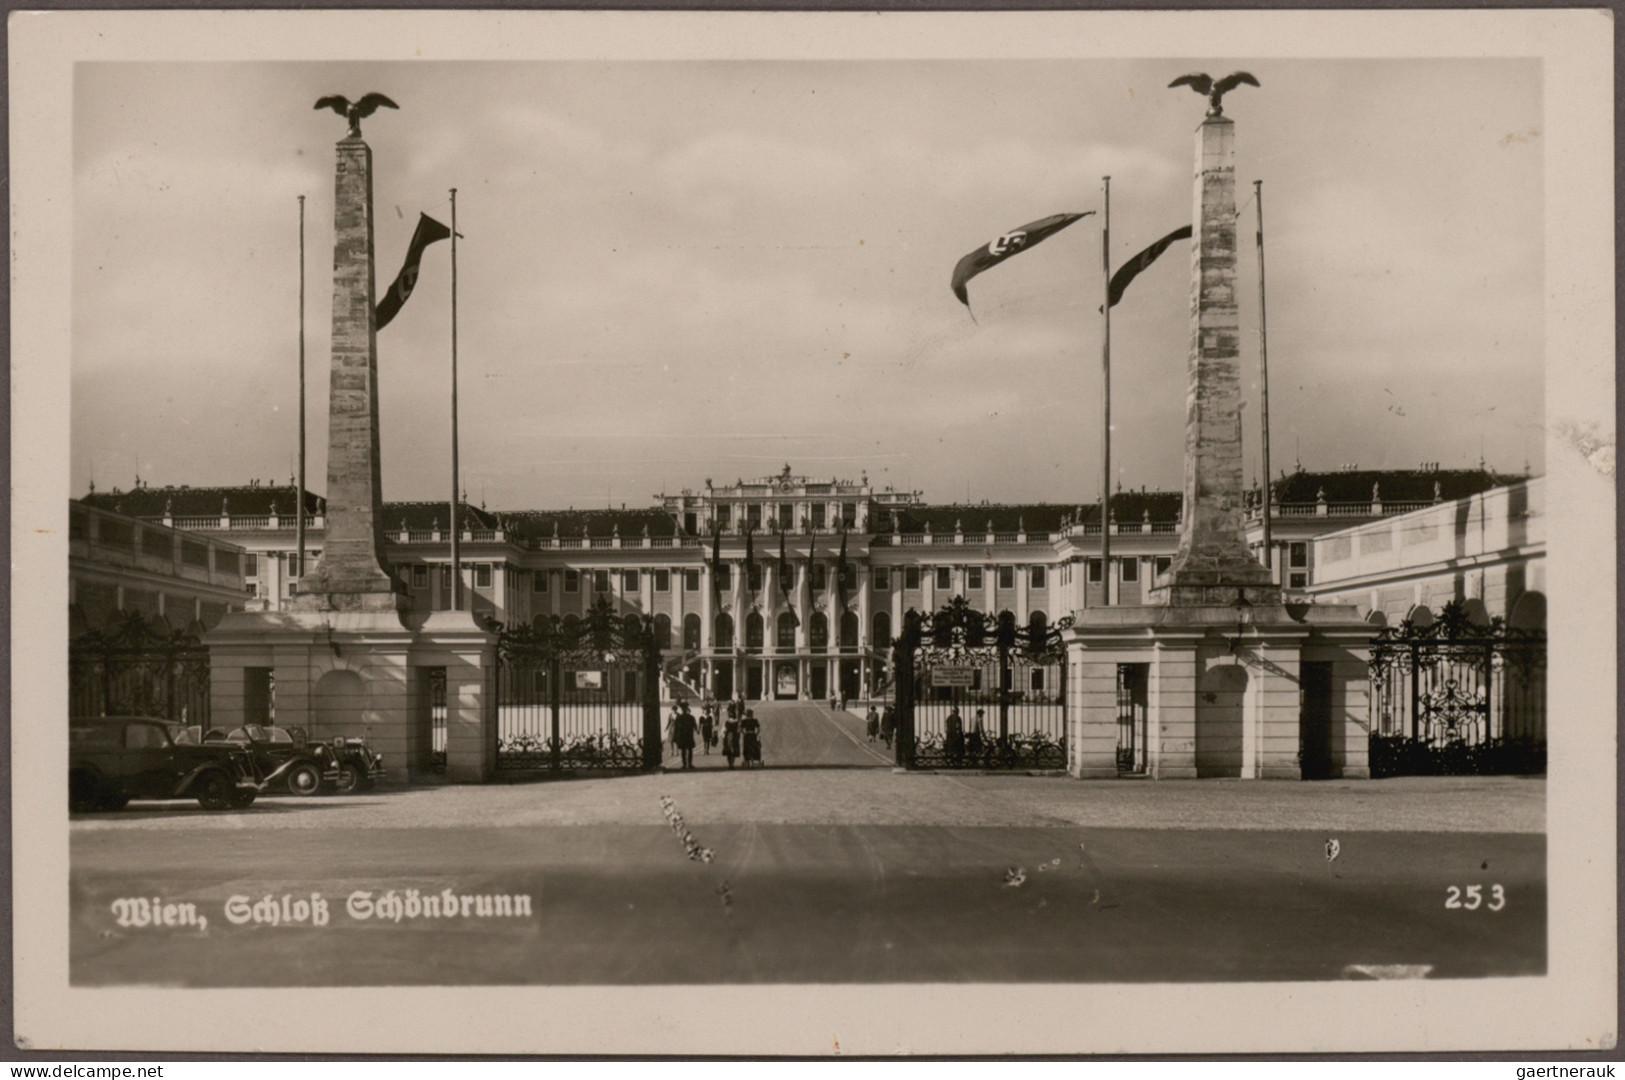 Nachlässe: 1890/1950 ca., enorme Ansichtskartensammlung in 24 Alben/Ordnern und